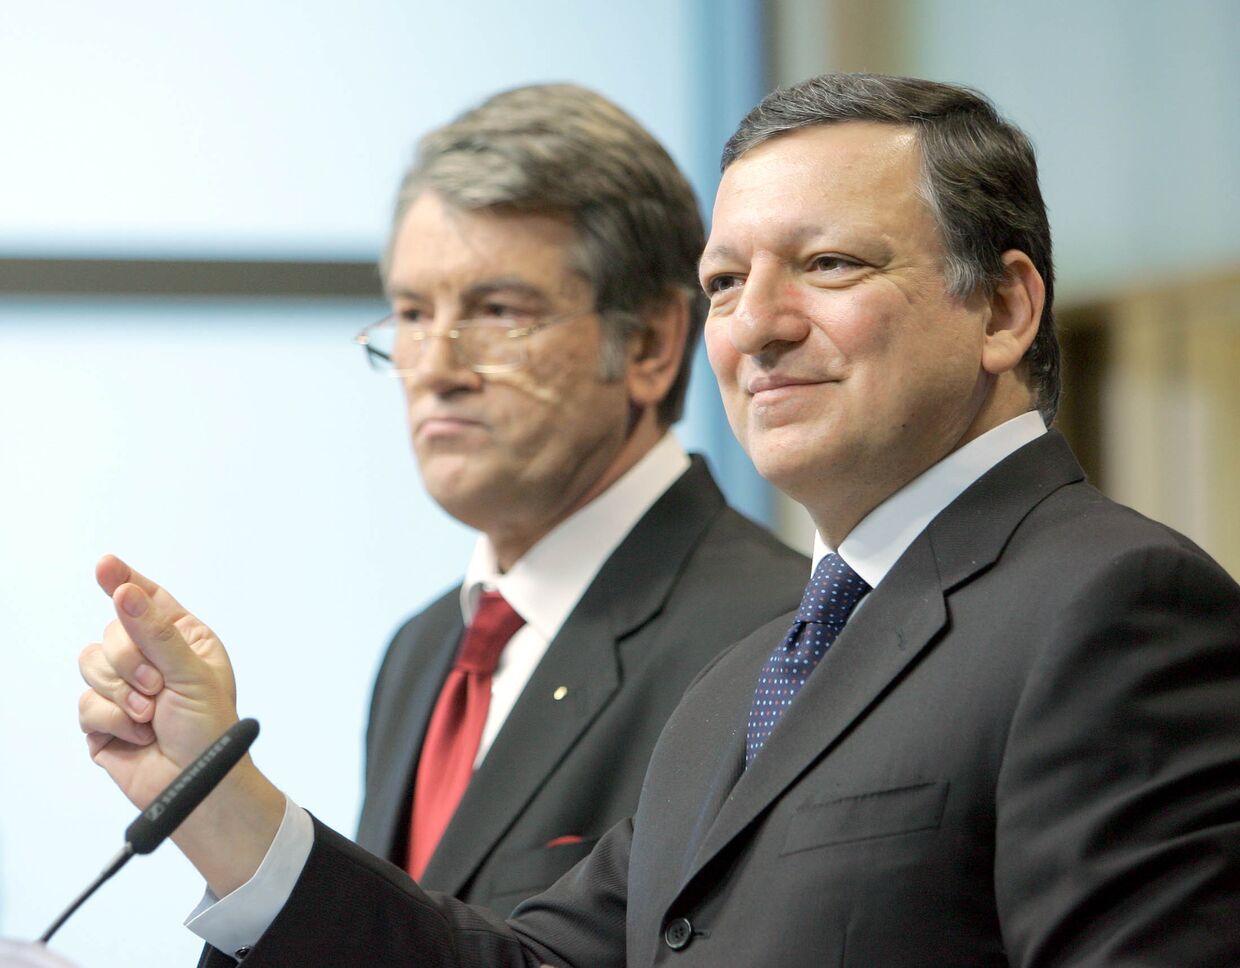 Пресс-конференция в Брюсселе главы Европейской комиссии Жозе Мануэля Баррозу и президента Украины Виктор Ющенко